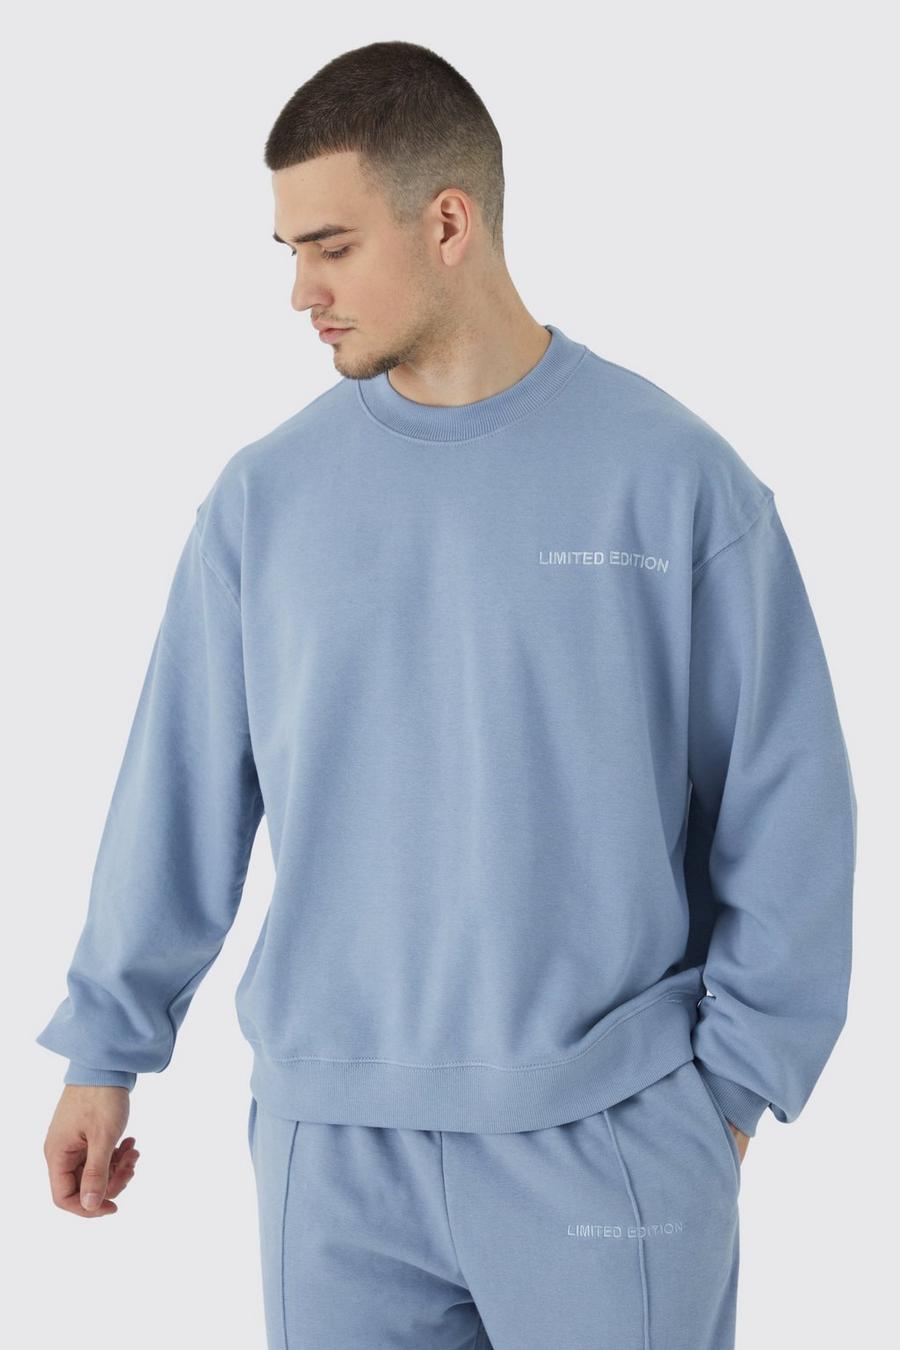 Dusty blue Tall Oversized Boxy Heavyweight Sweatshirt